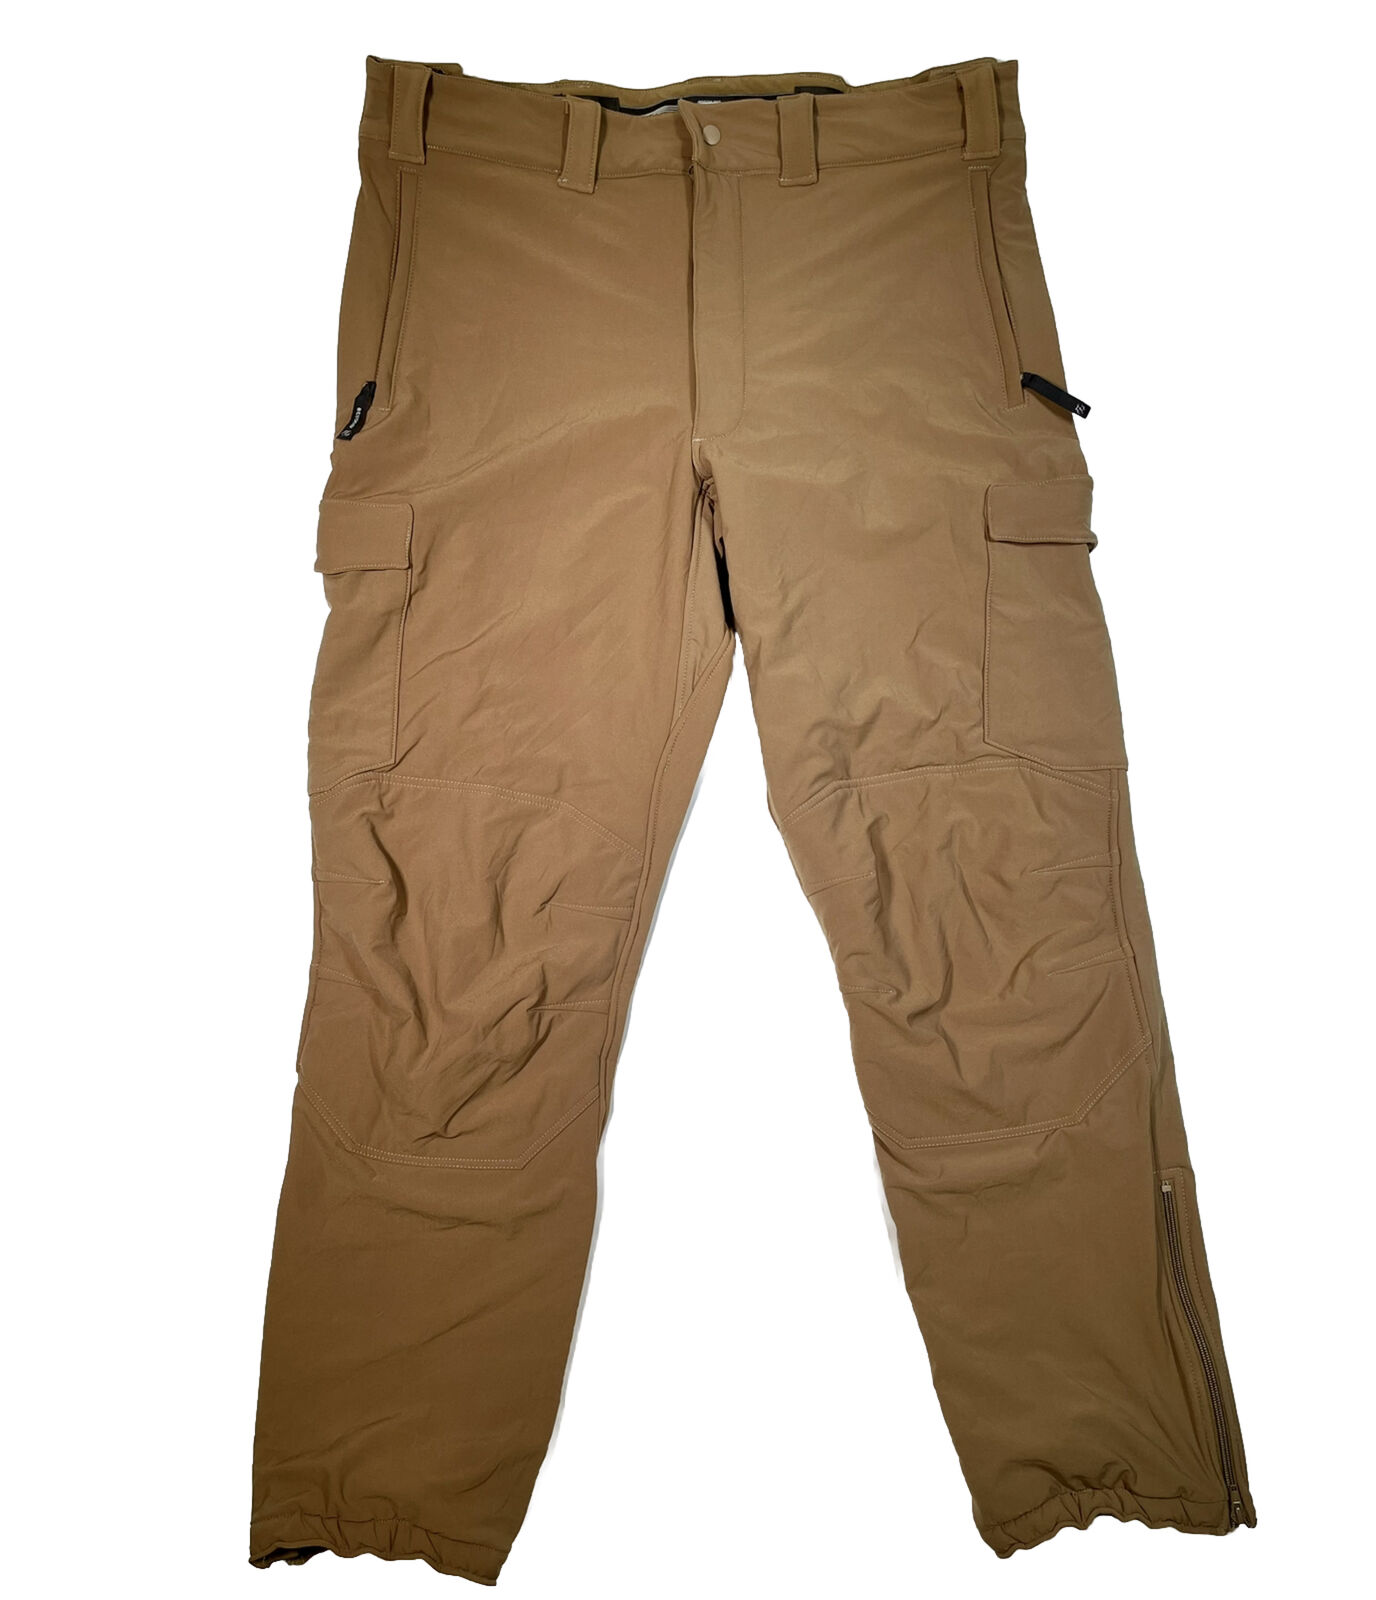 Beyond Clothing - Tactical Pants - CLS PCU L5 Cold Fusion Pants - Mens Size L